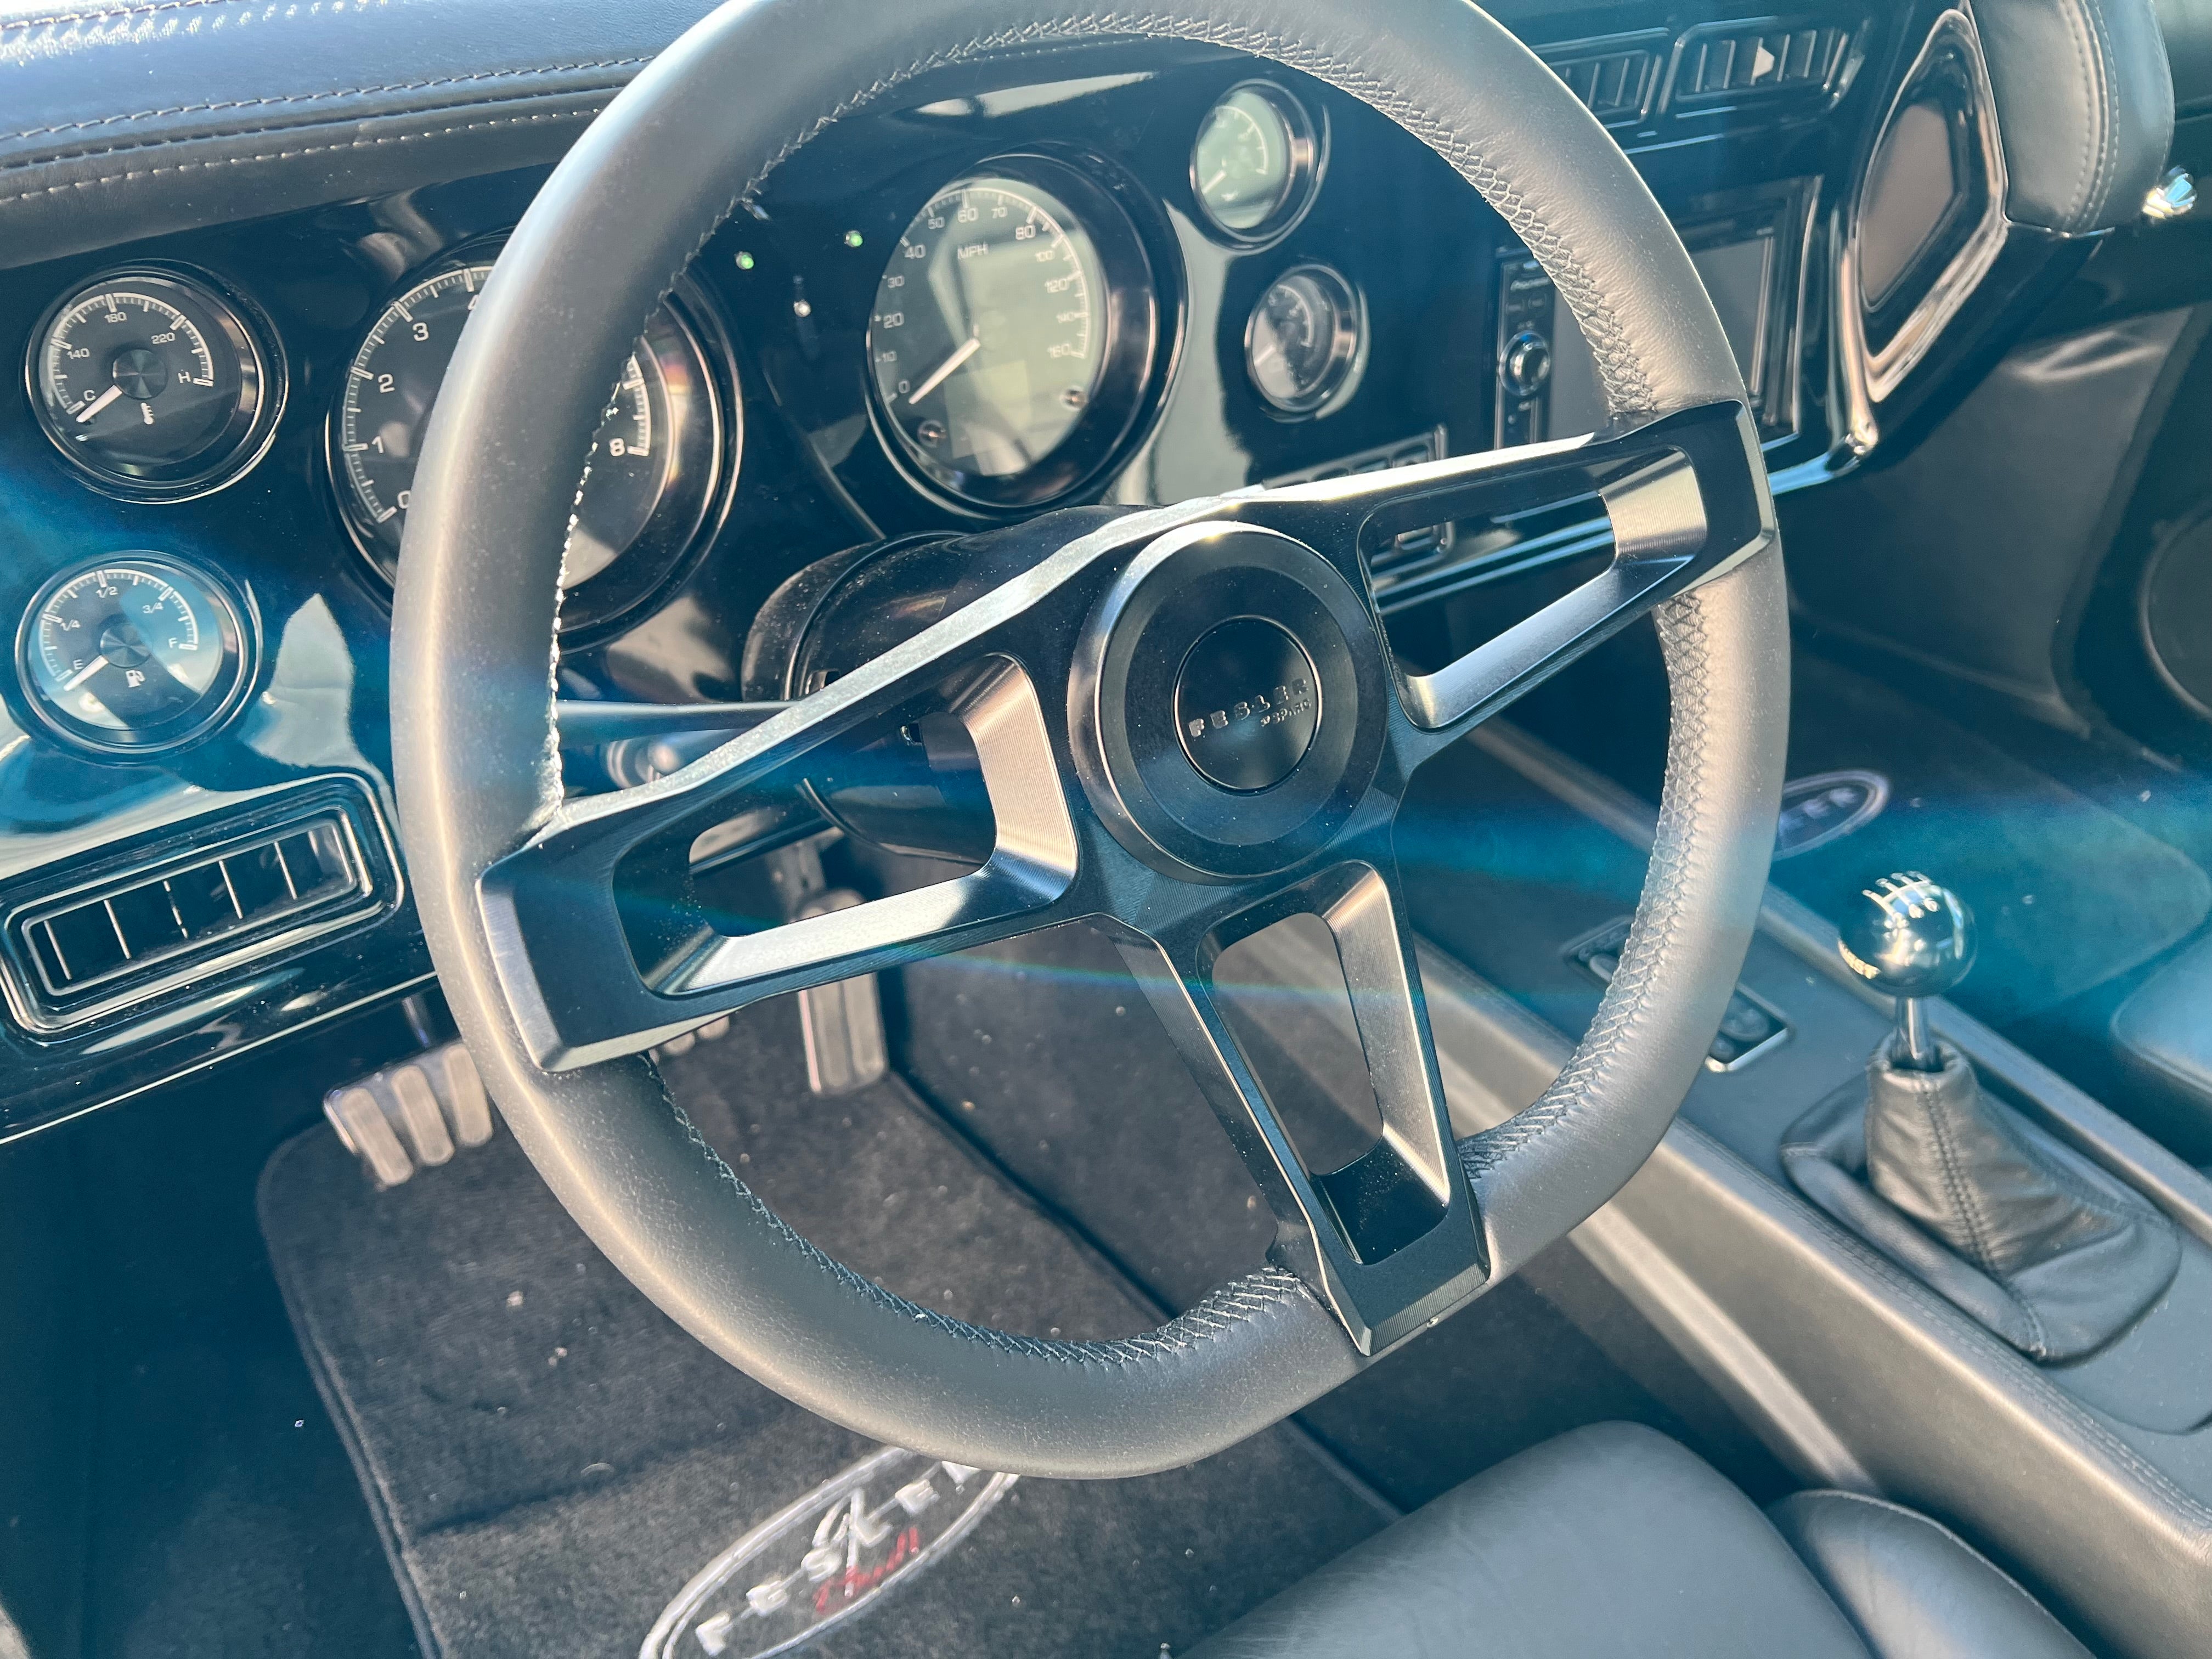 1970-72 Chevelle Dash Insert